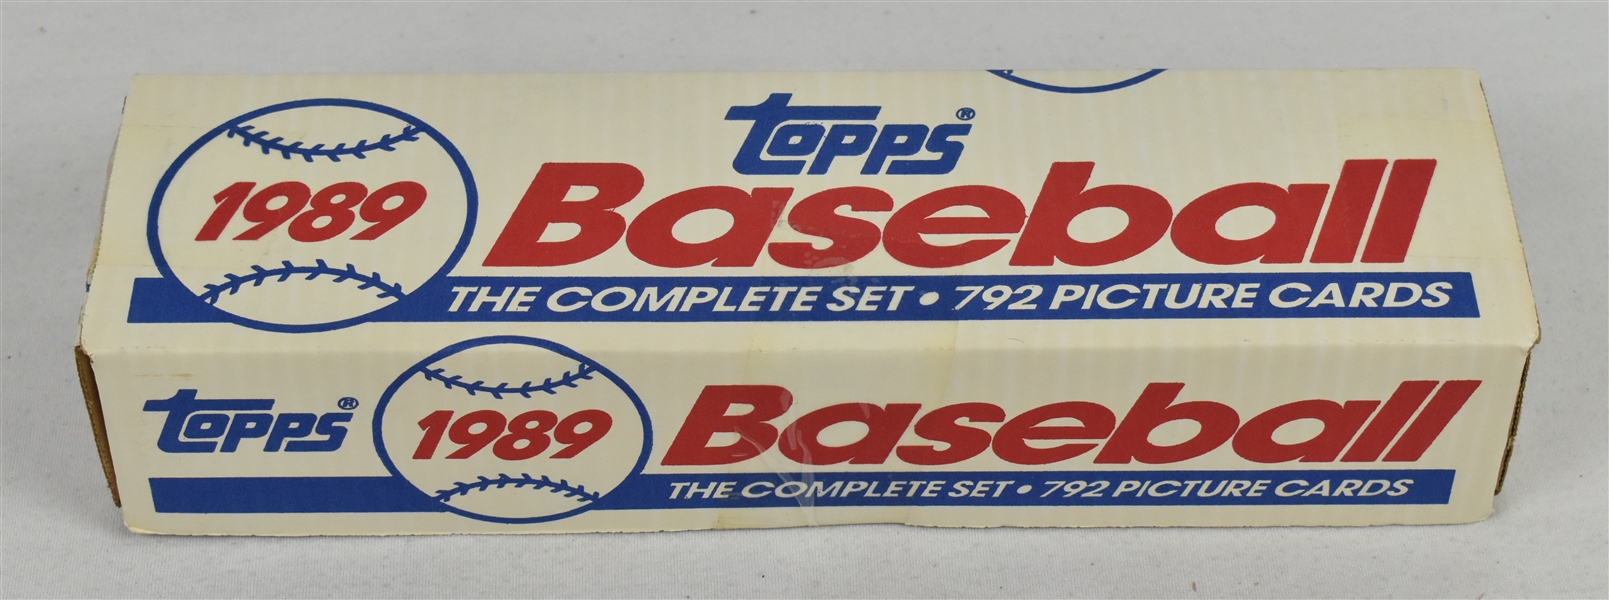 Topps 1989 Complete Baseball Card Set